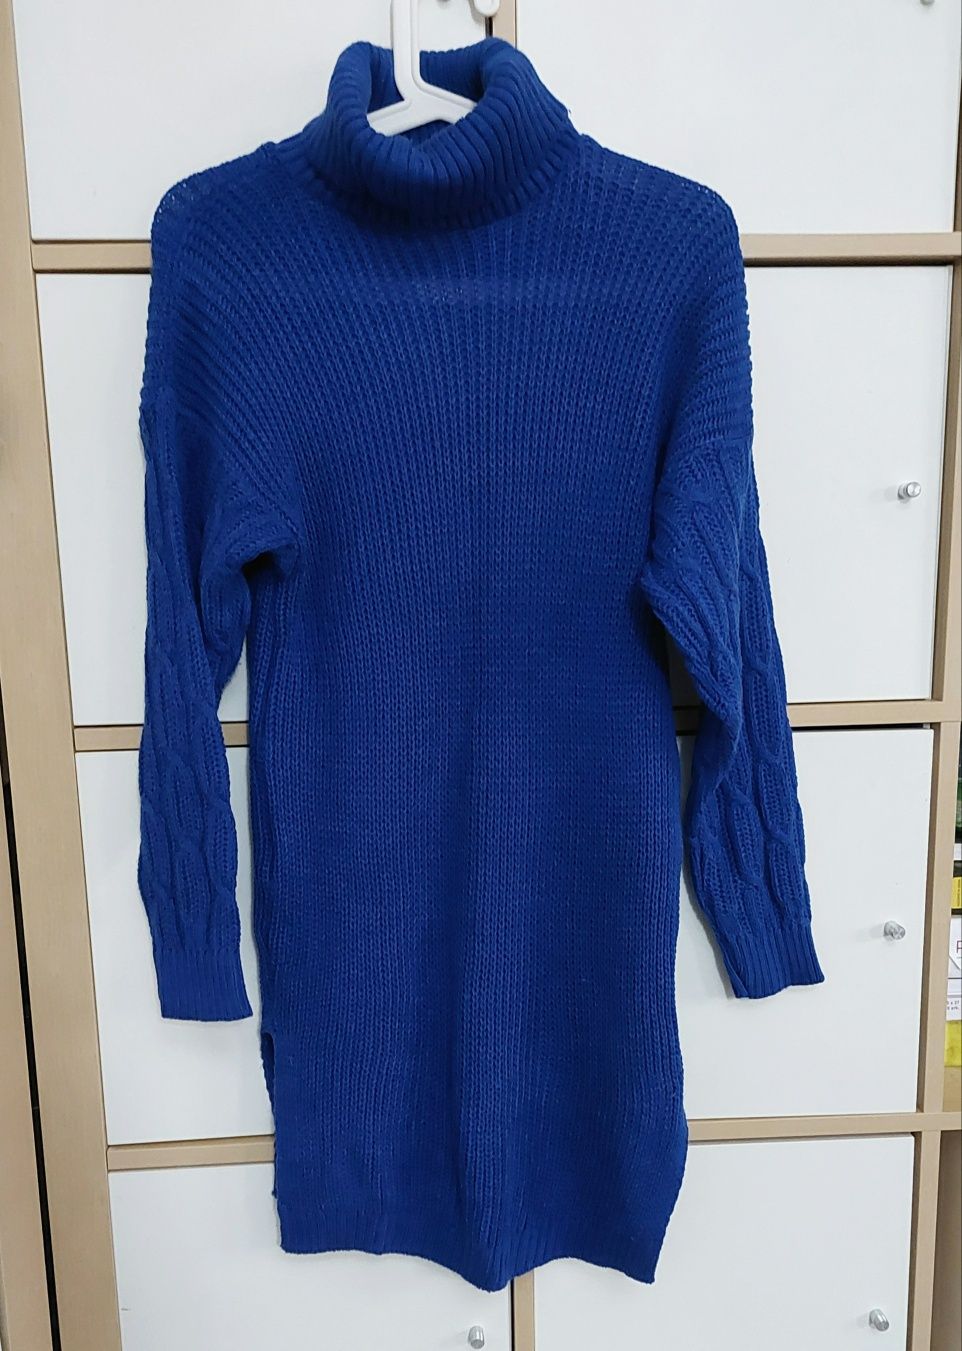 Niebieska sukienka sweterkowa długi sweter